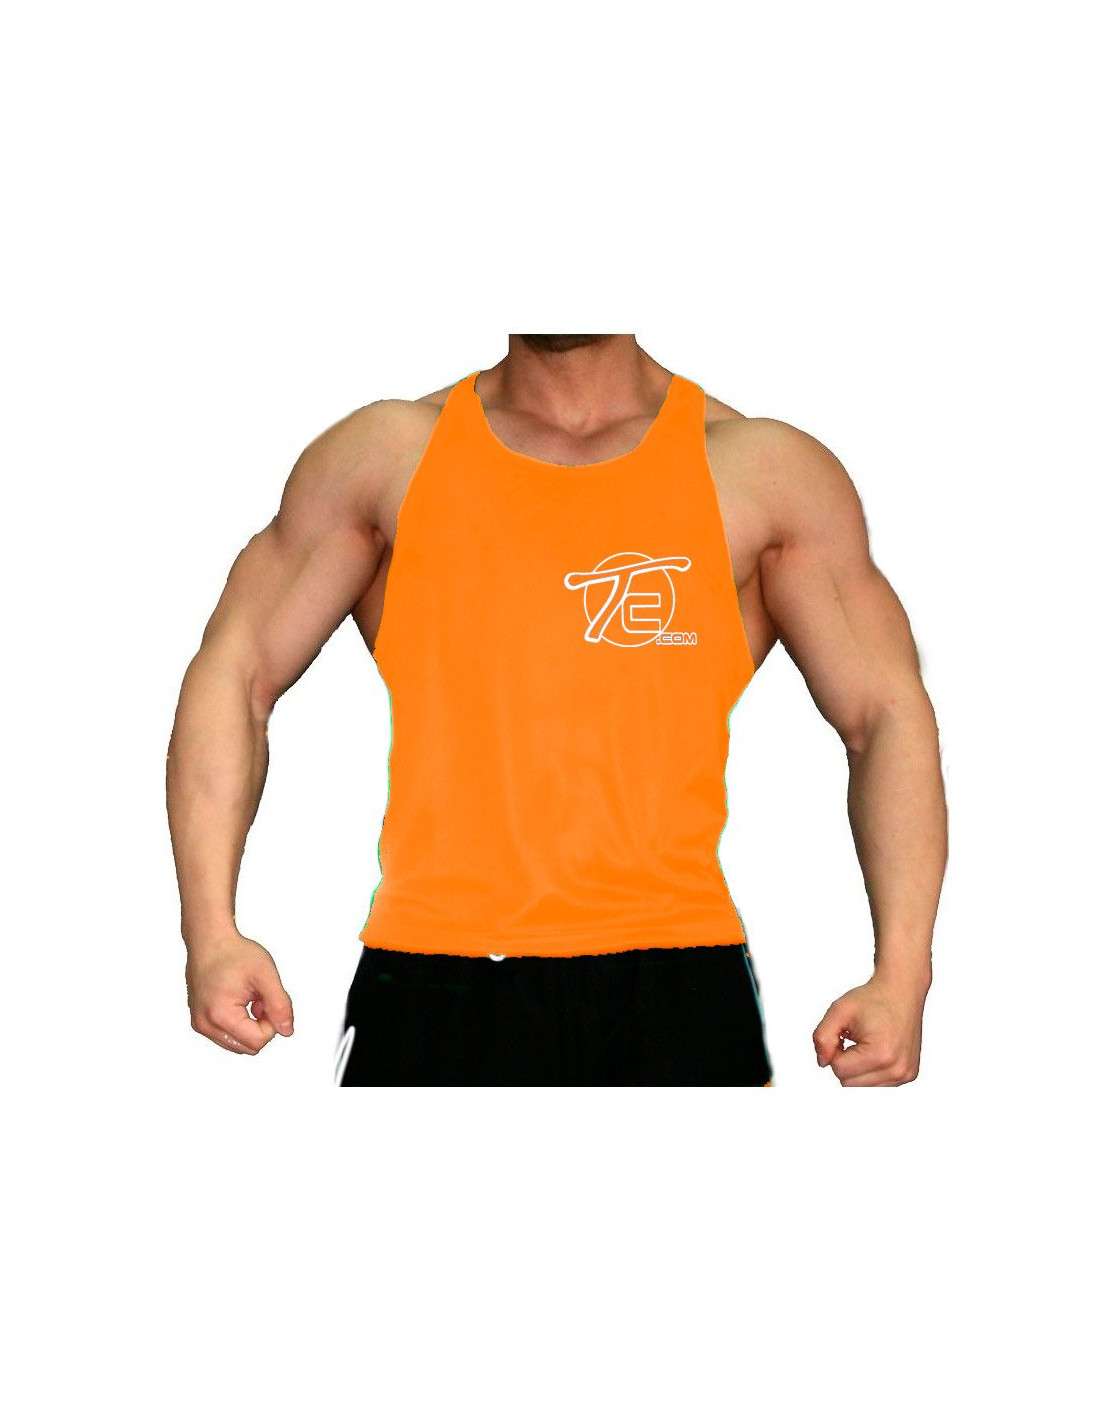 Camisetas gimnasio 【Camisetas gym】 - Tiendaculturista ®